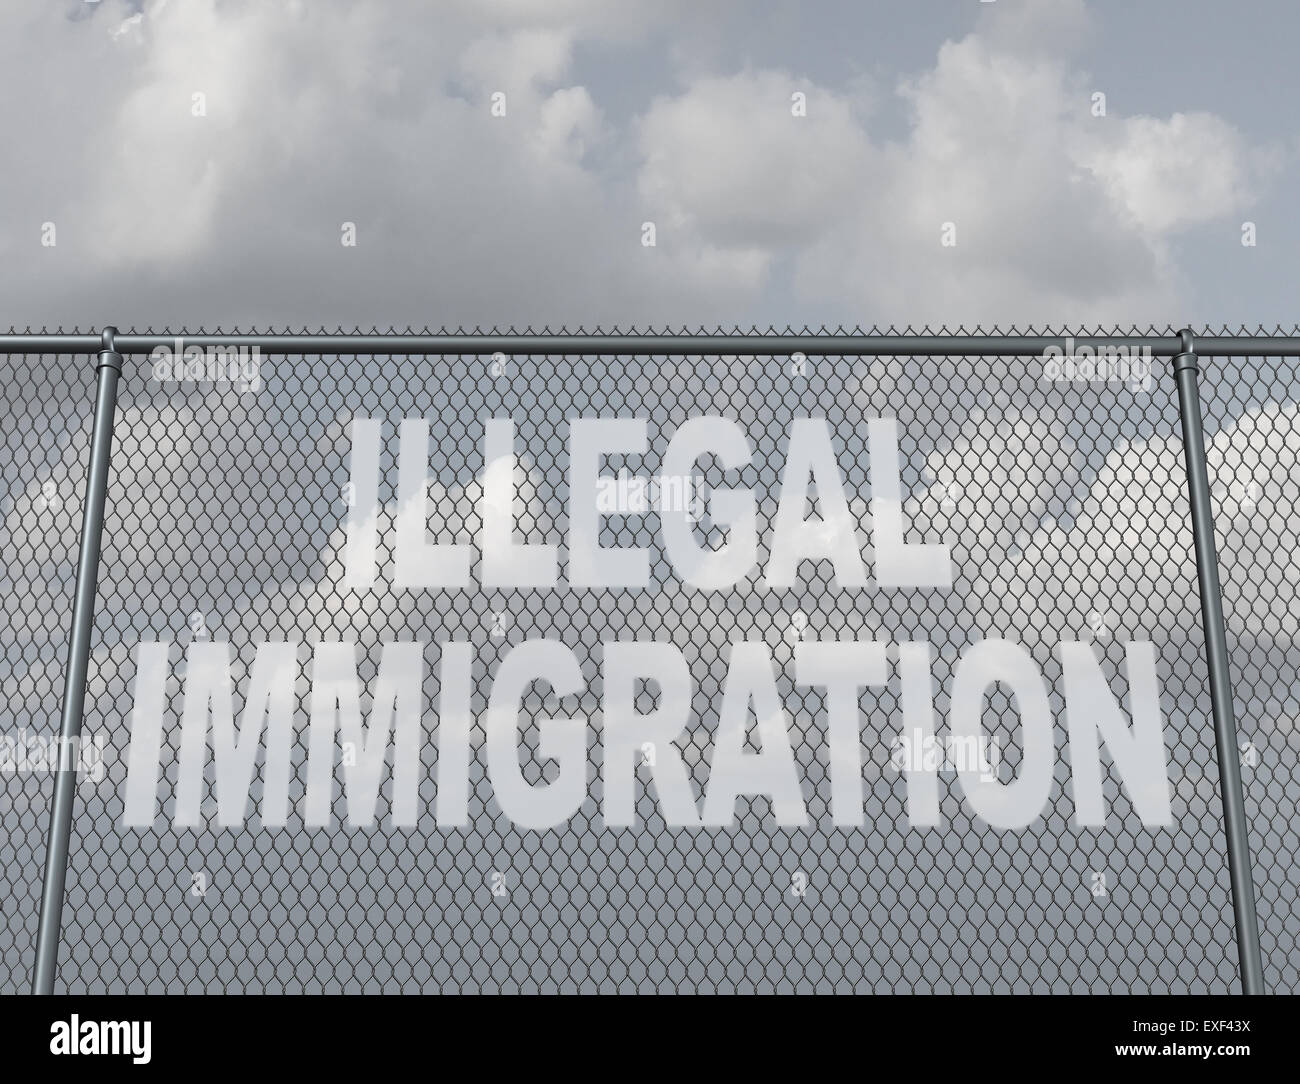 Concept de l'immigration illégale en tant que chaîne clôture avec un trou en forme de texte qui représente les gens traverser illégalement la frontière de violer la loi sur l'immigration du pays que les immigrants sans papiers. Banque D'Images